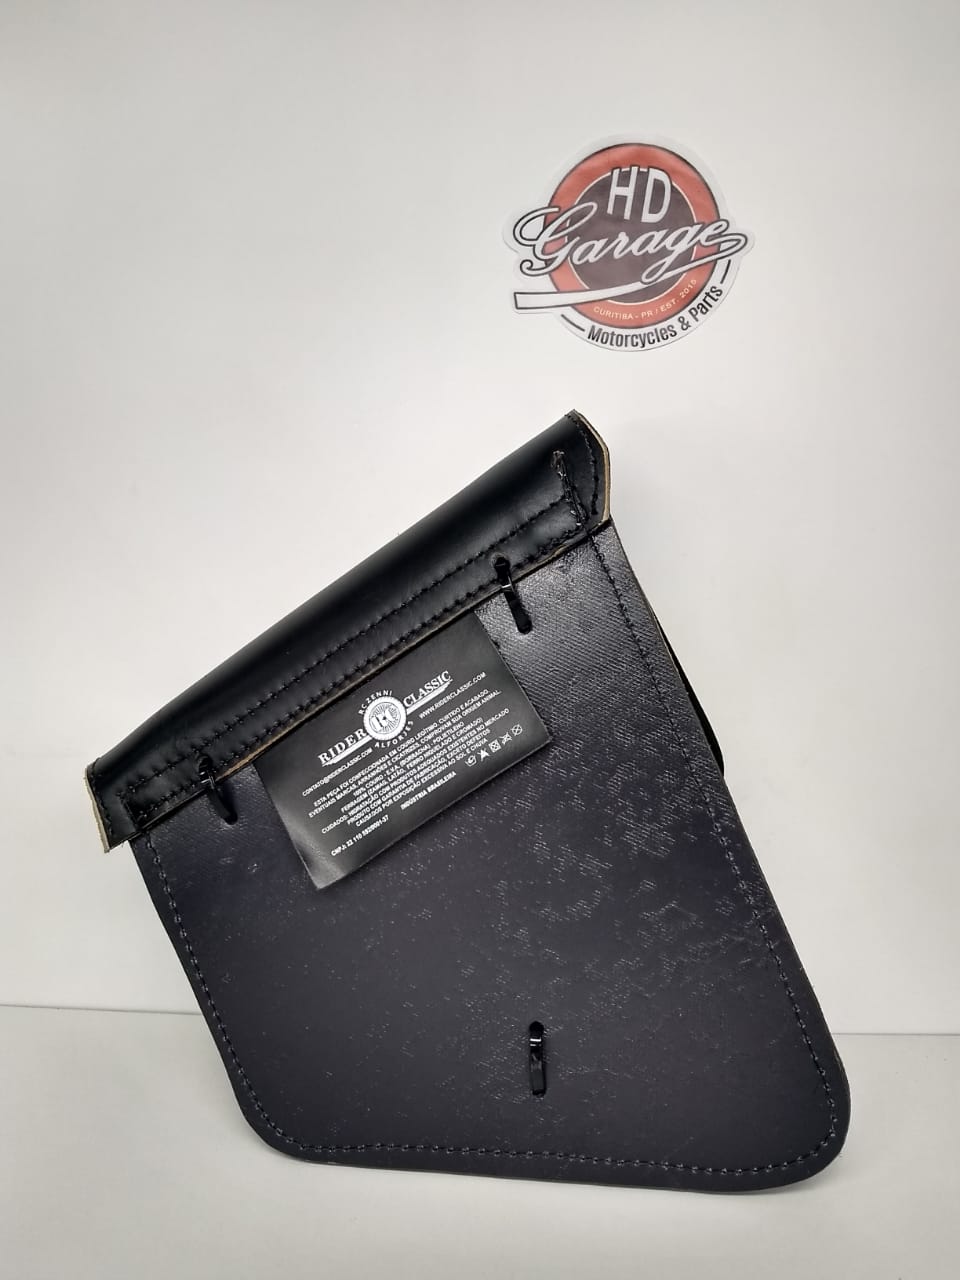 Bolsa de Balança em Couro - Motivo Bar & Shield - HD Softail - 2 Litros - Preta com Bordas Lixadas - 008/15503